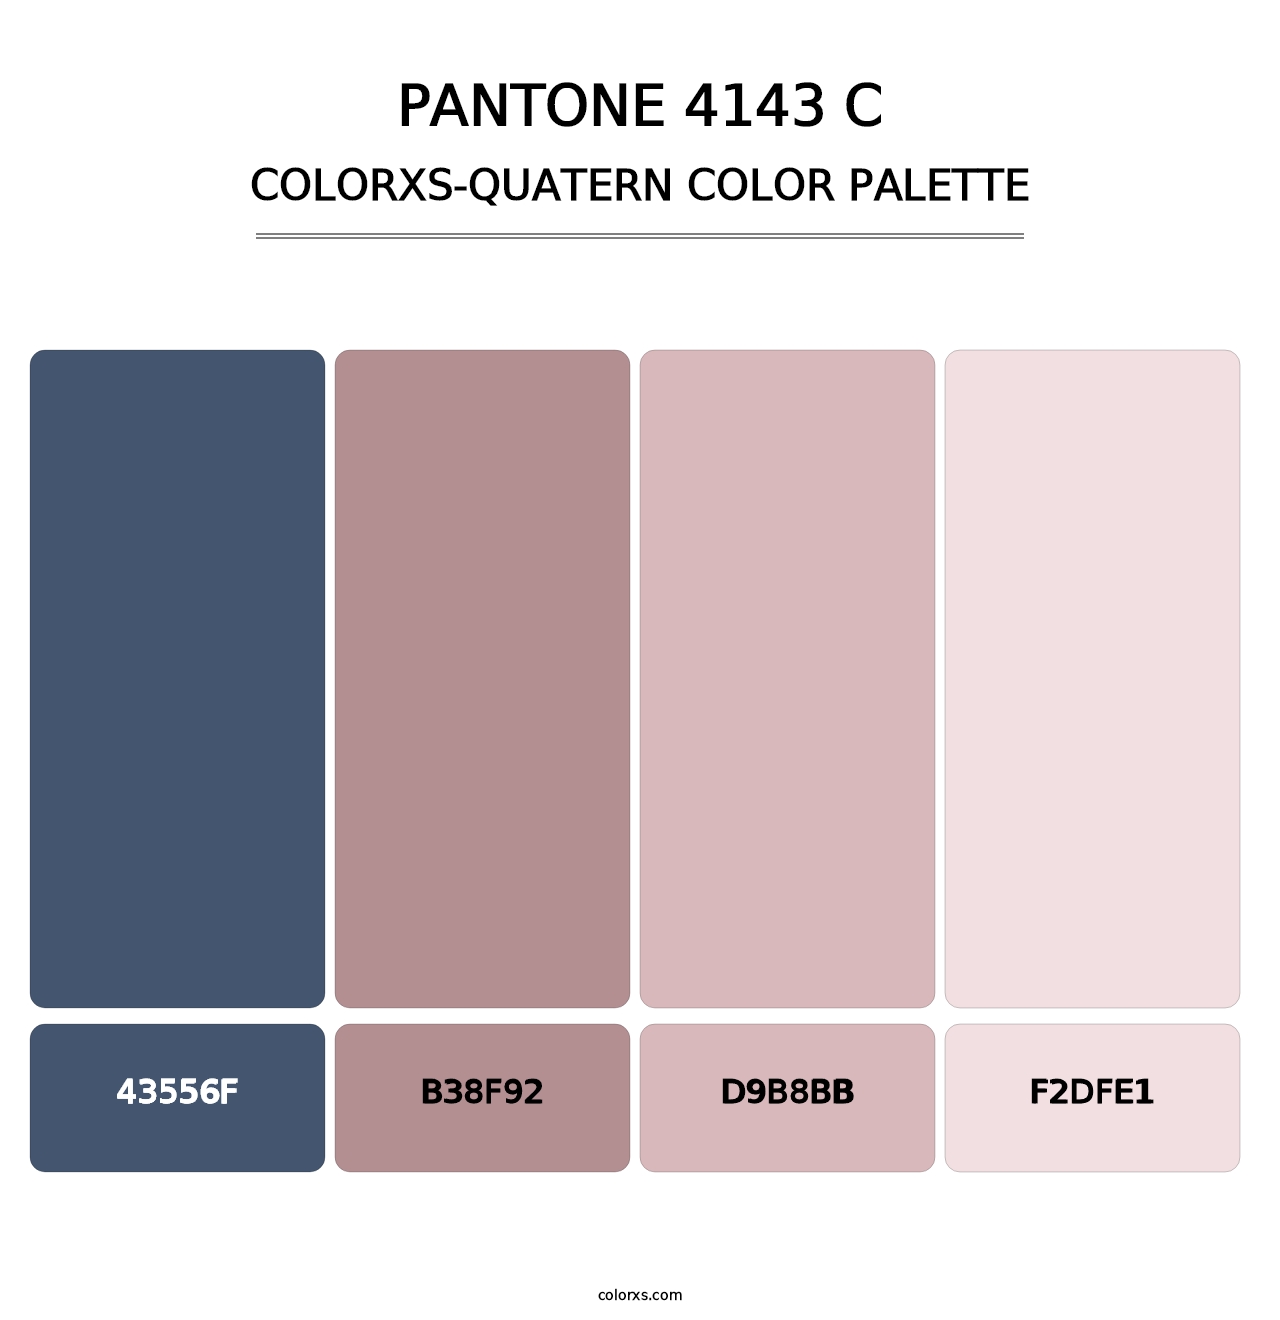 PANTONE 4143 C - Colorxs Quatern Palette